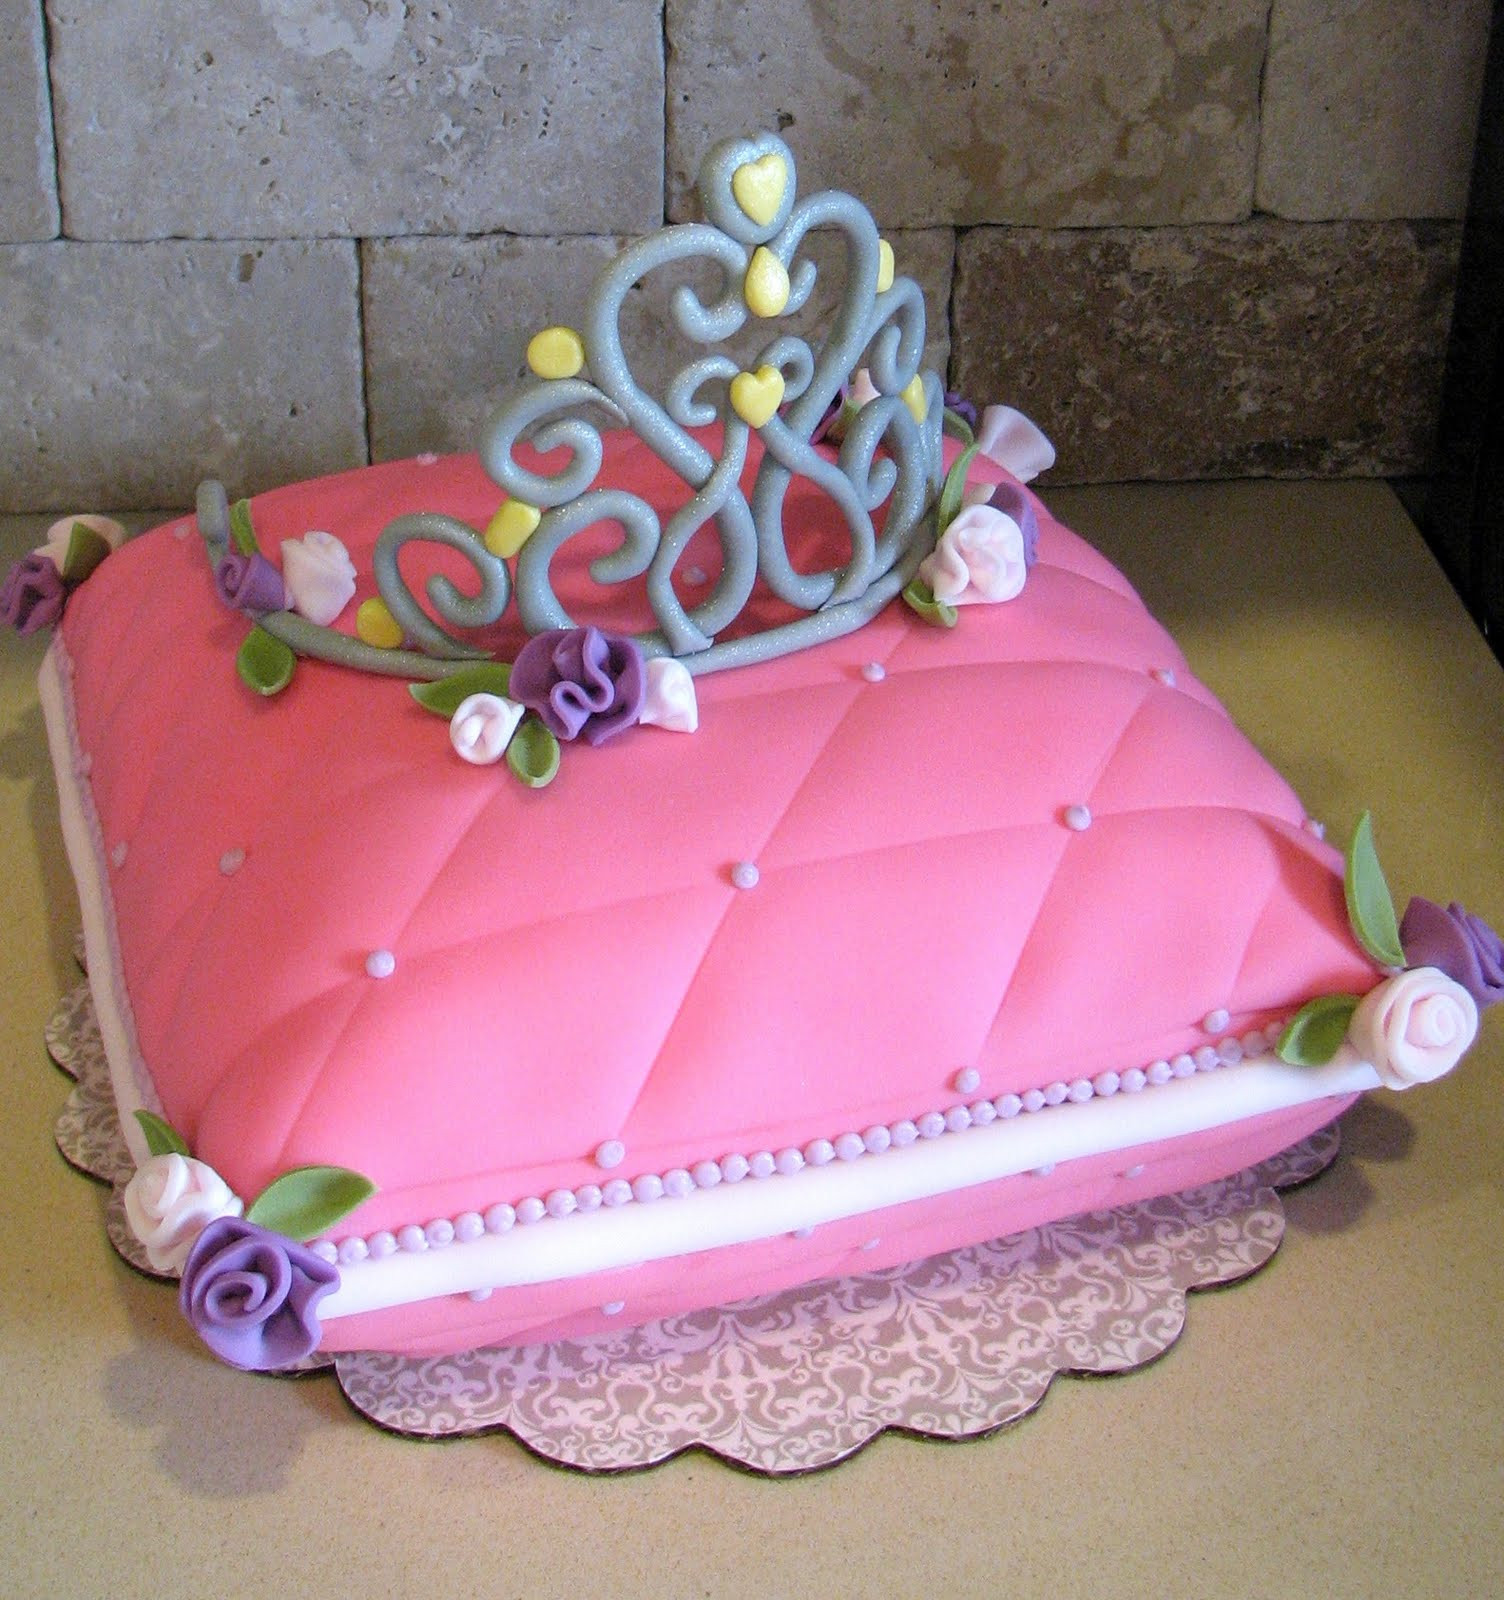 Costco Birthday Cake
 Costco Birthday Cakes